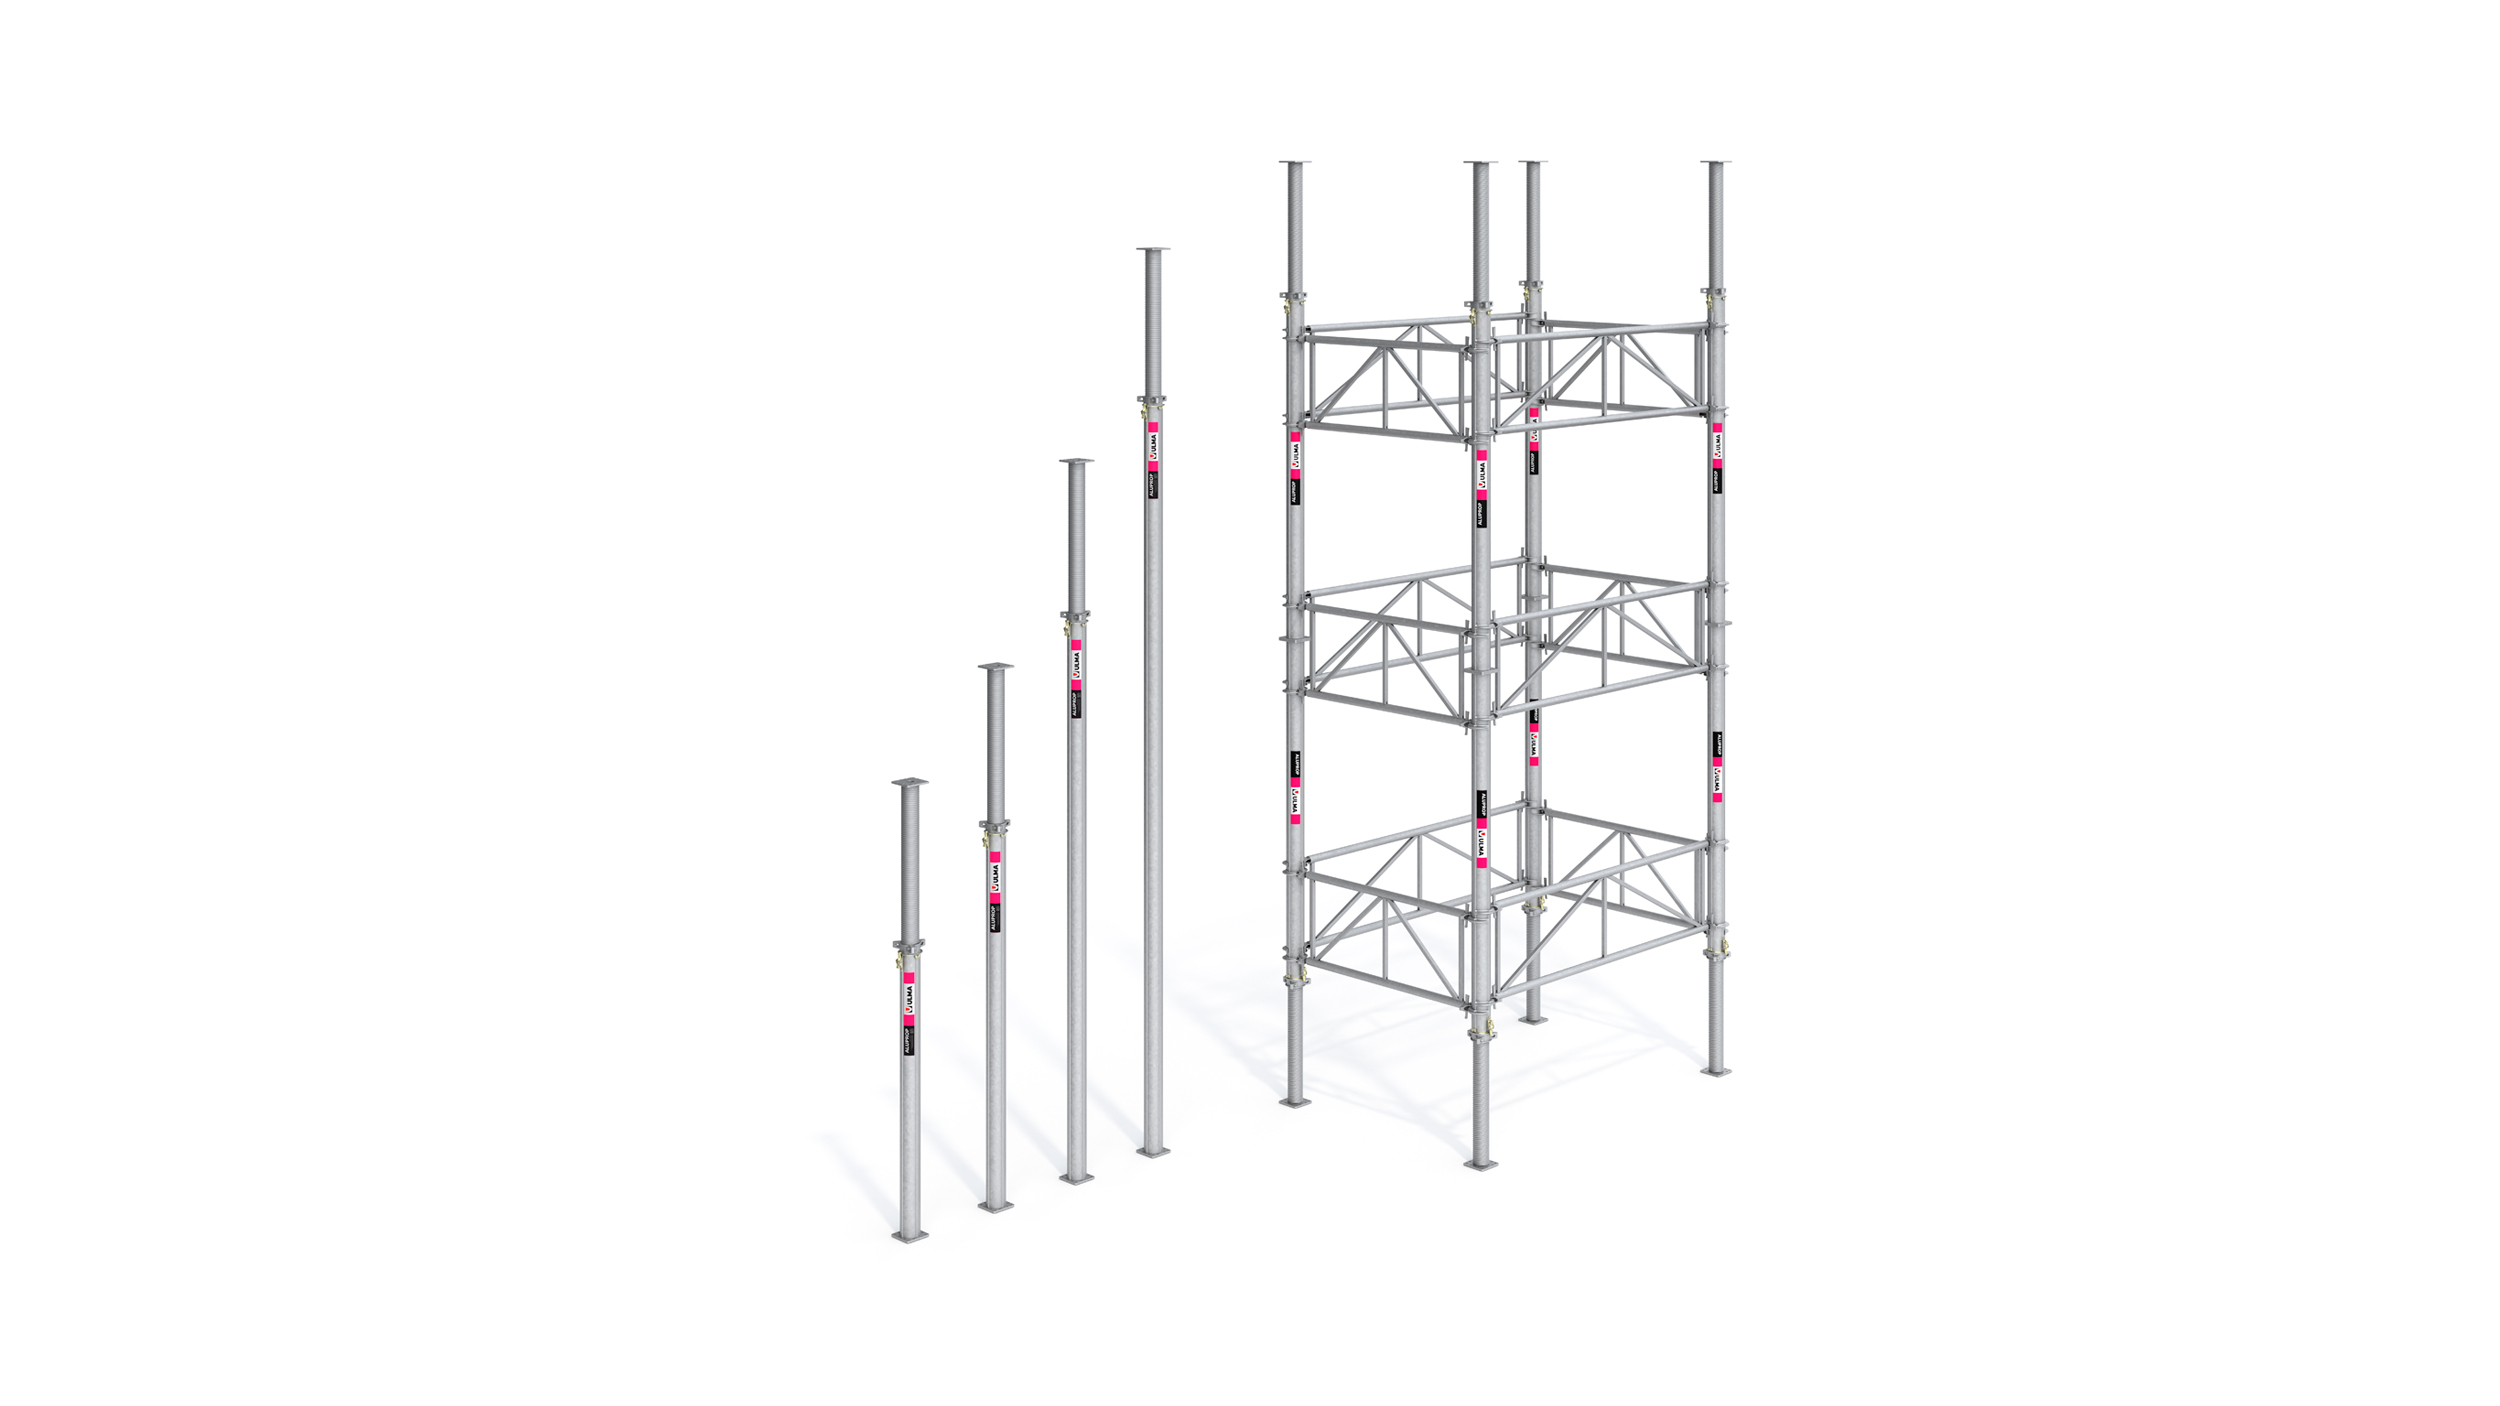 Sistema di puntellazione certificato per carichi pesanti. Punti di forza: componenti leggeri e configurazioni per torre fino a 12 m.